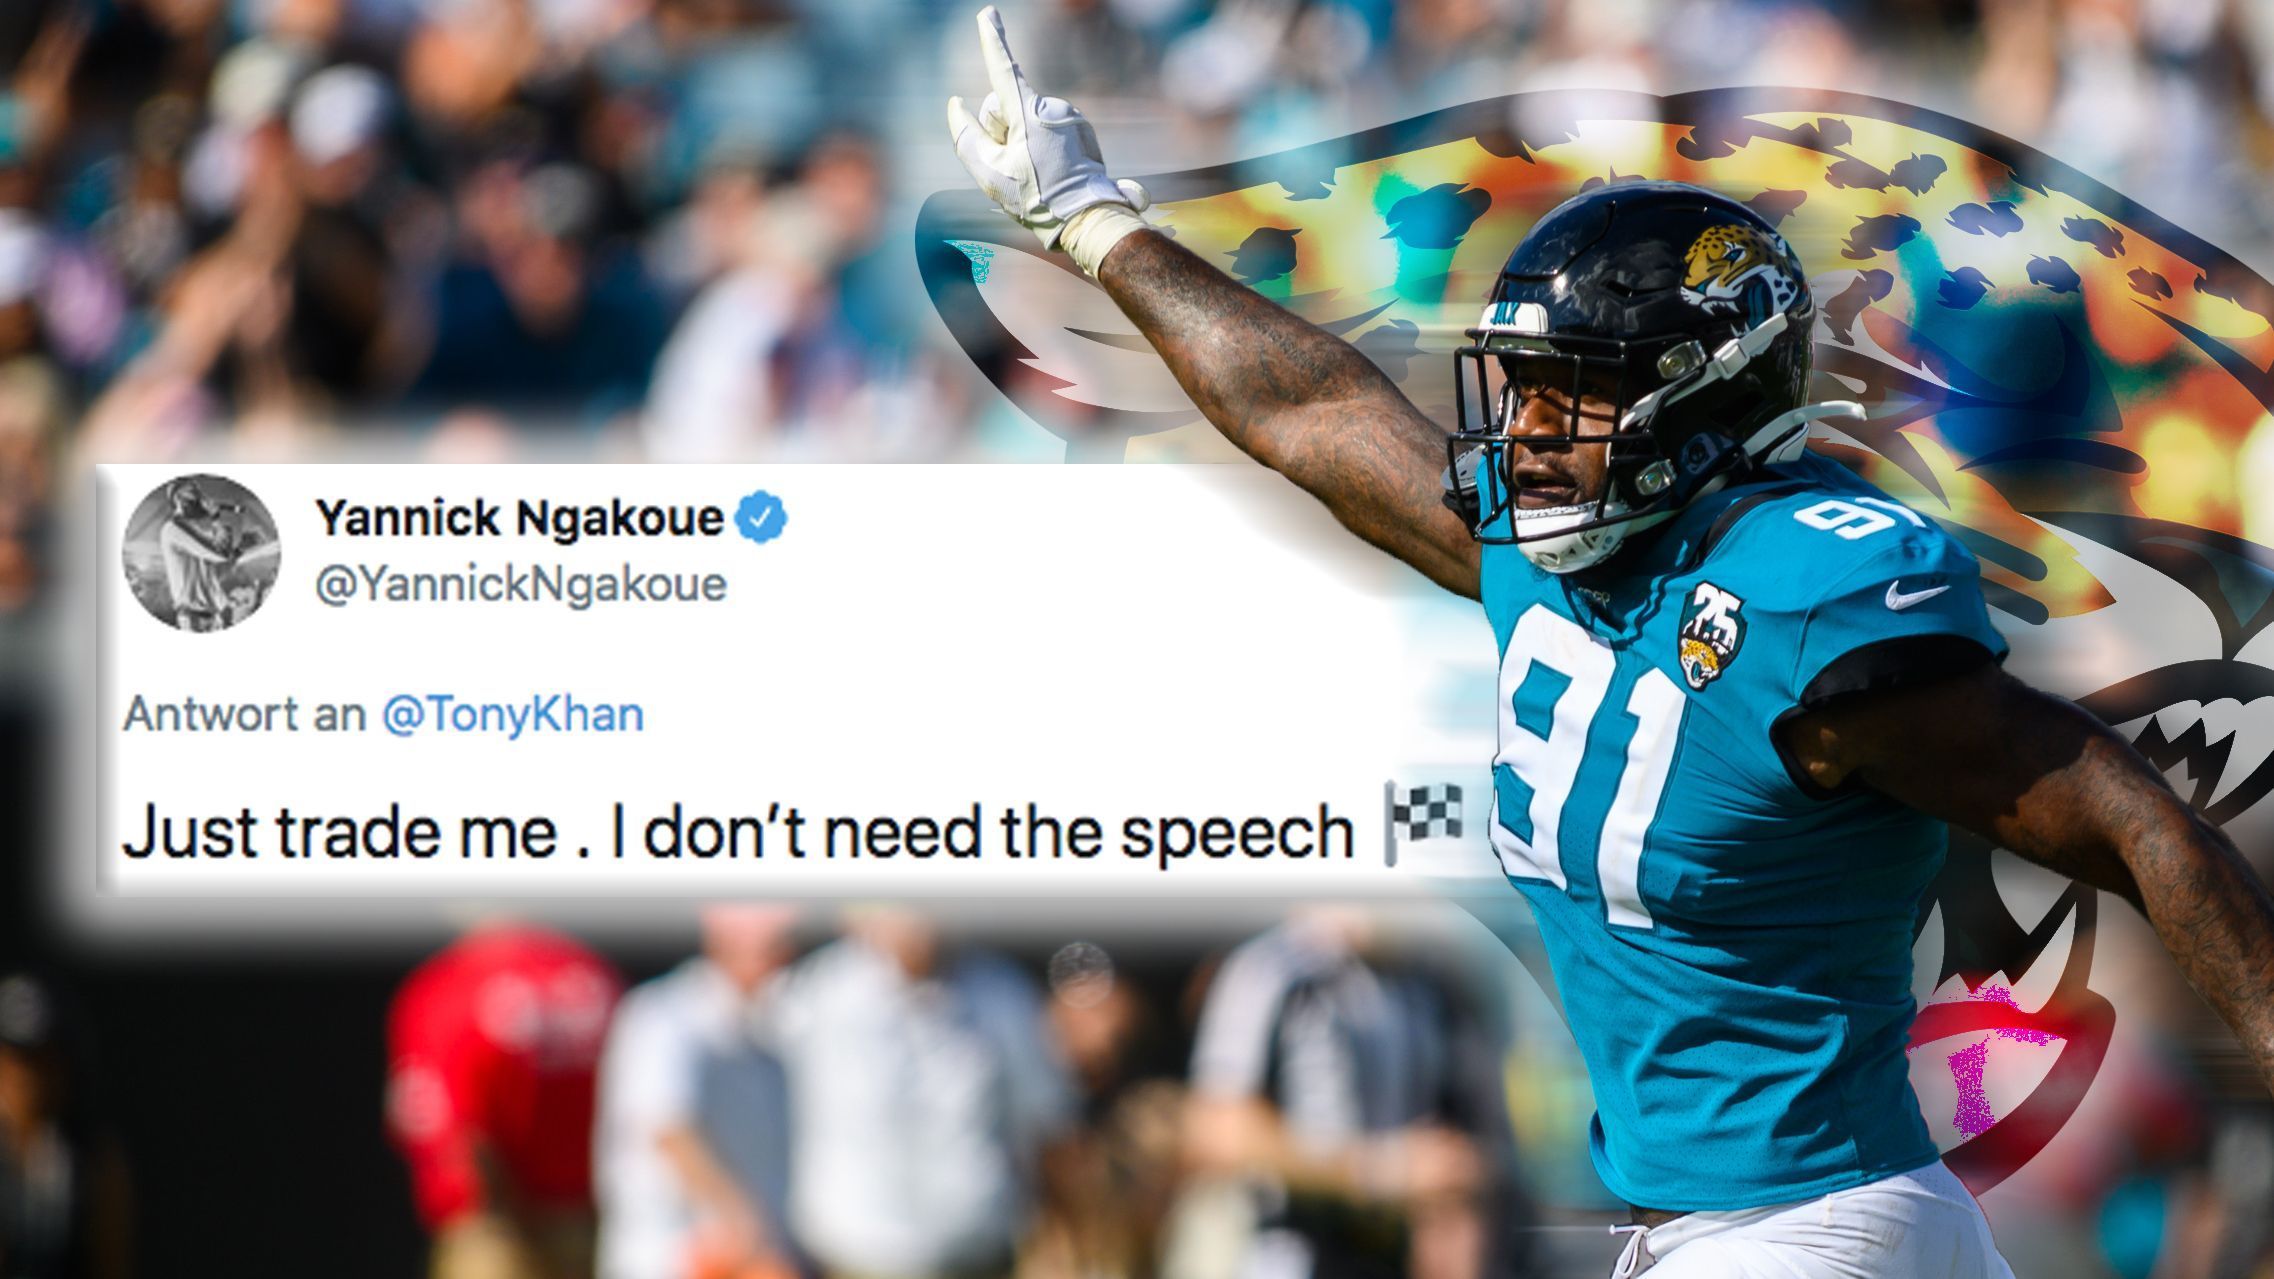 
                <strong>Yannick Ngakoue liefert sich Twitter-Beef mit Sohn von Jaguars-Besitzer</strong><br>
                Der Defensive End antwortete ermüdet: "Traden Sie mich einfach und ersparen Sie mir die Rede." Mit dem Zielflaggen-Emoji dahinter.
              